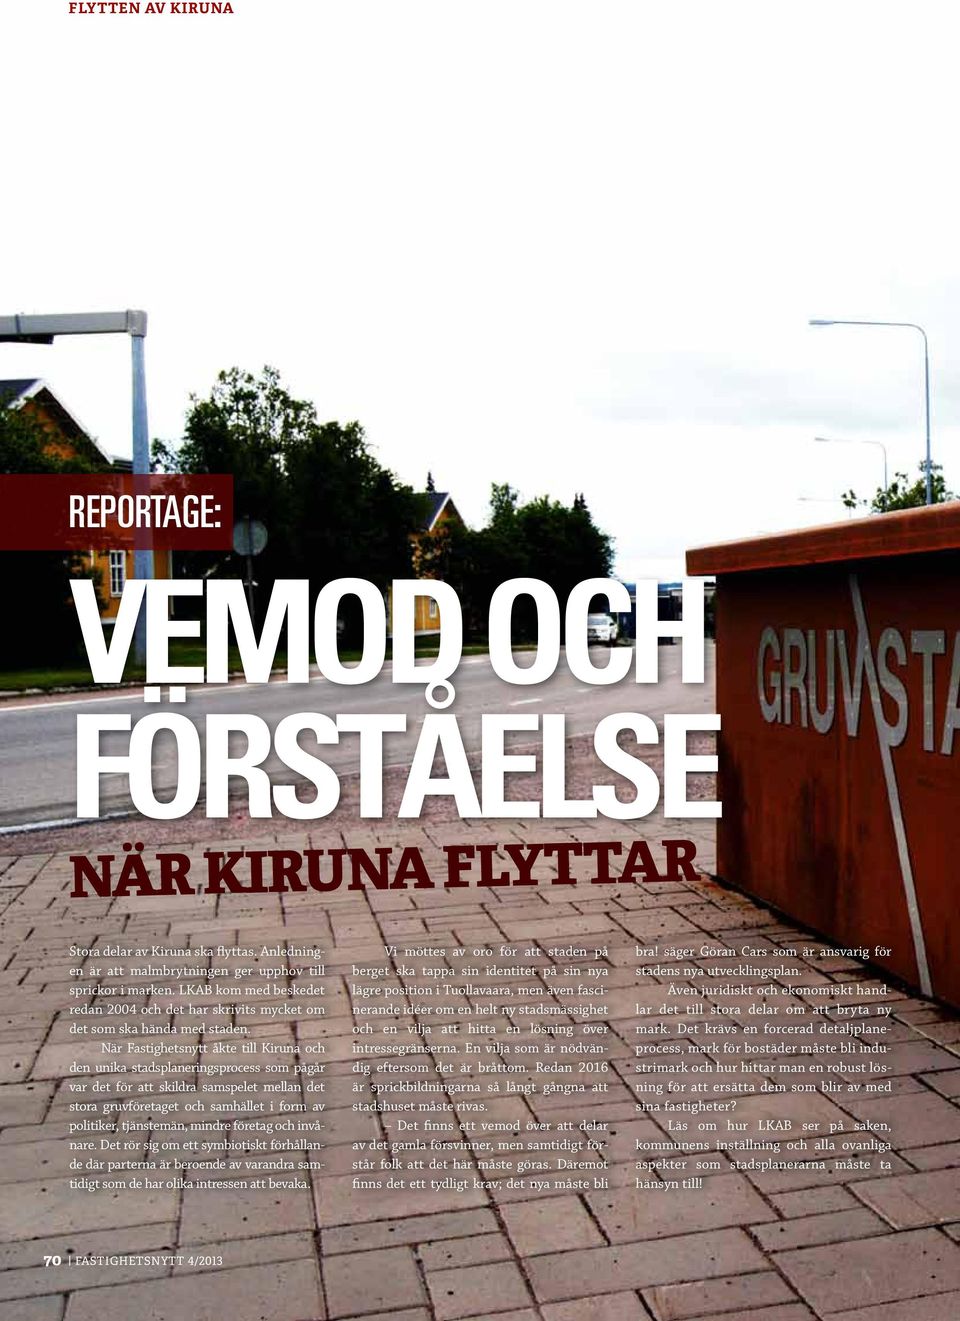 När Fastighetsnytt åkte till Kiruna och den unika stadsplaneringsprocess som pågår var det för att skildra samspelet mellan det stora gruvföretaget och samhället i form av politiker, tjänstemän,